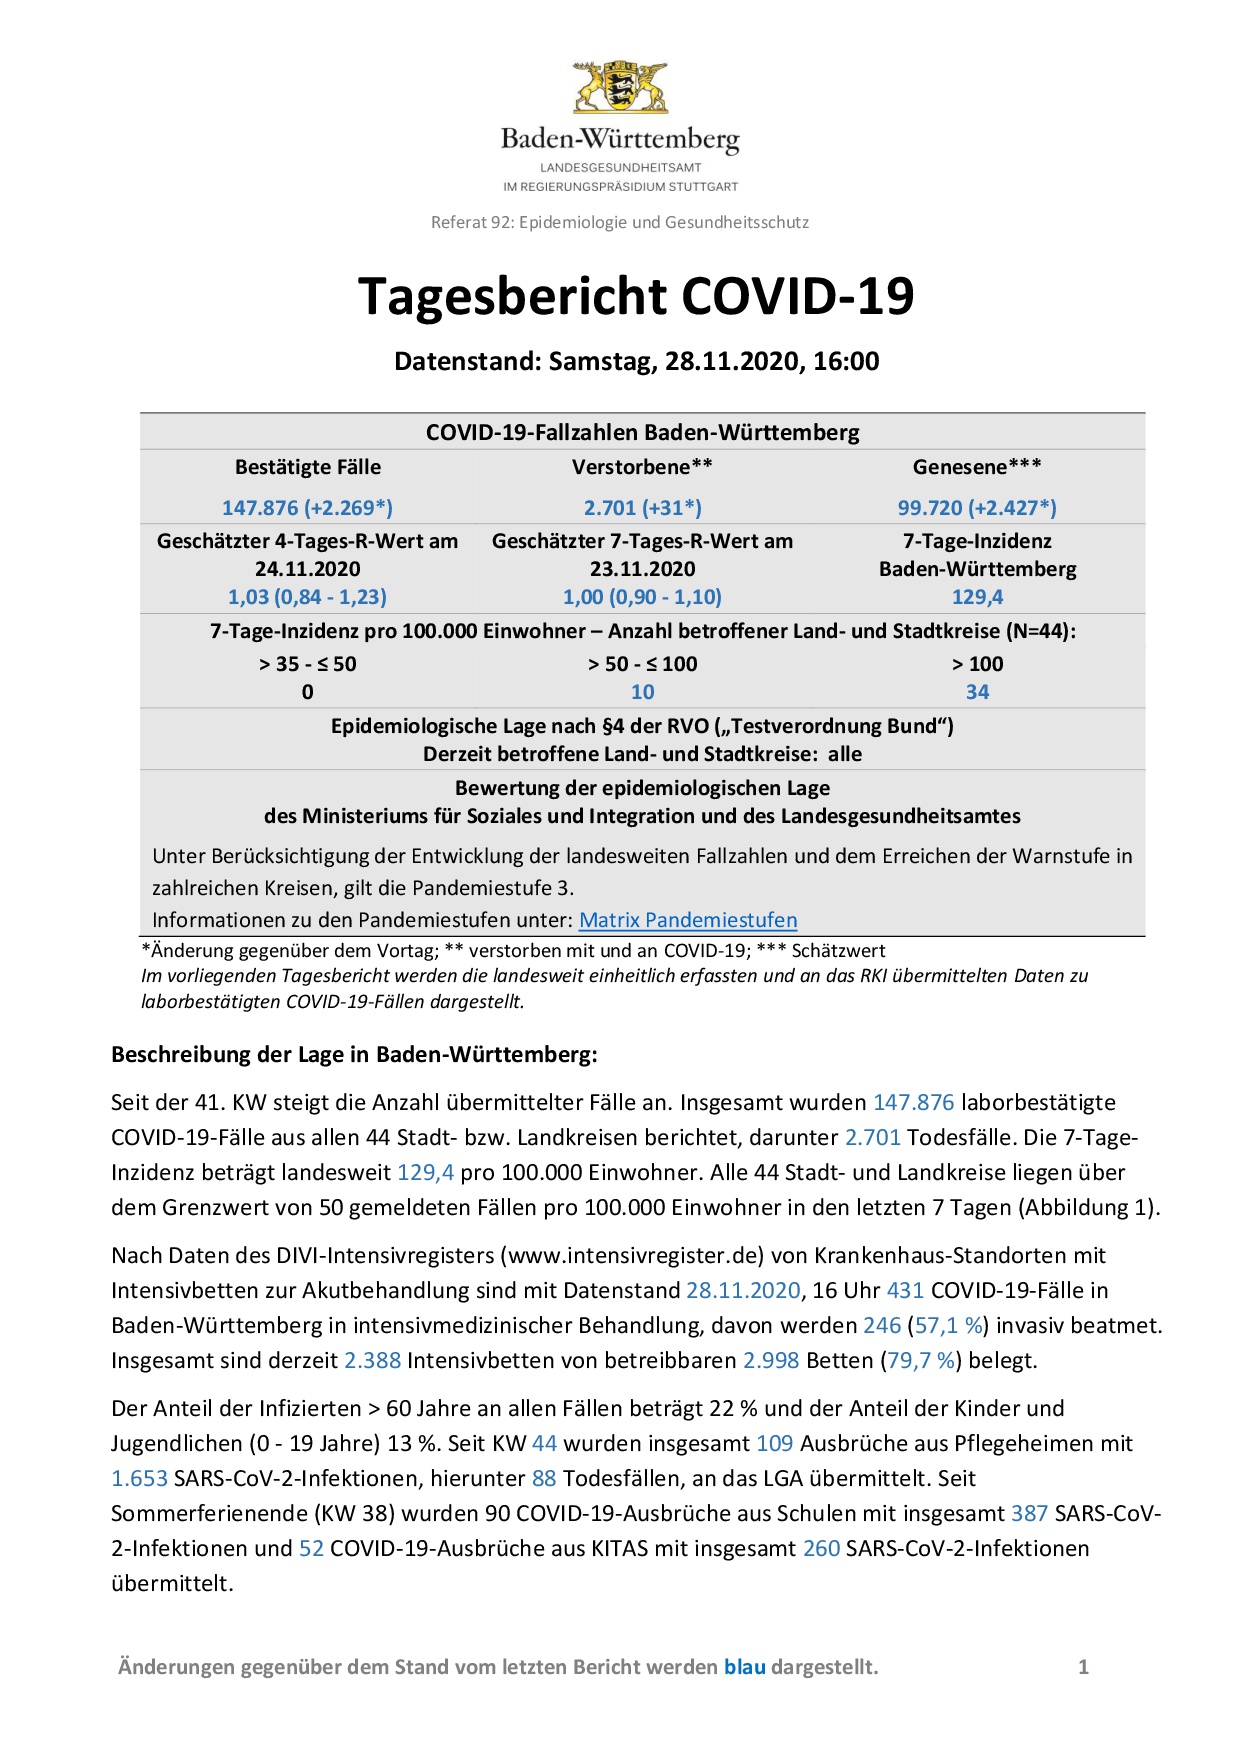 COVID-19 Tagesbericht (28.11.2020) des Landesgesundheitsamts Baden-Württemberg – (ausführlicher)